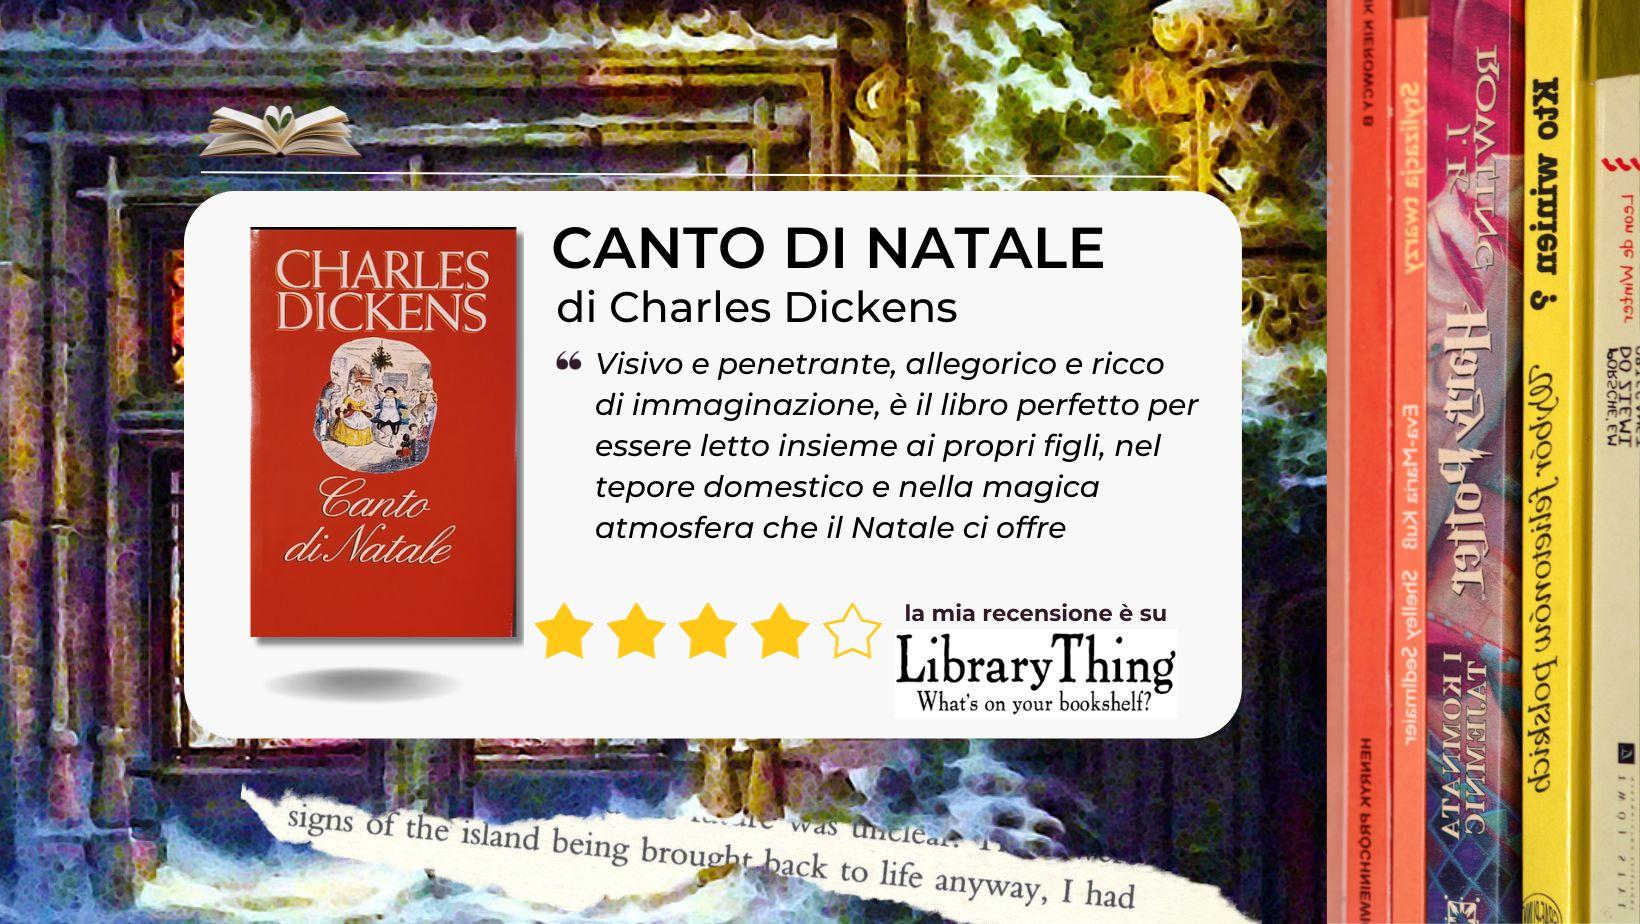 Da leggere insieme il "Canto di Natale" di Charles Dickens, in difesa dei più deboli e della speranza